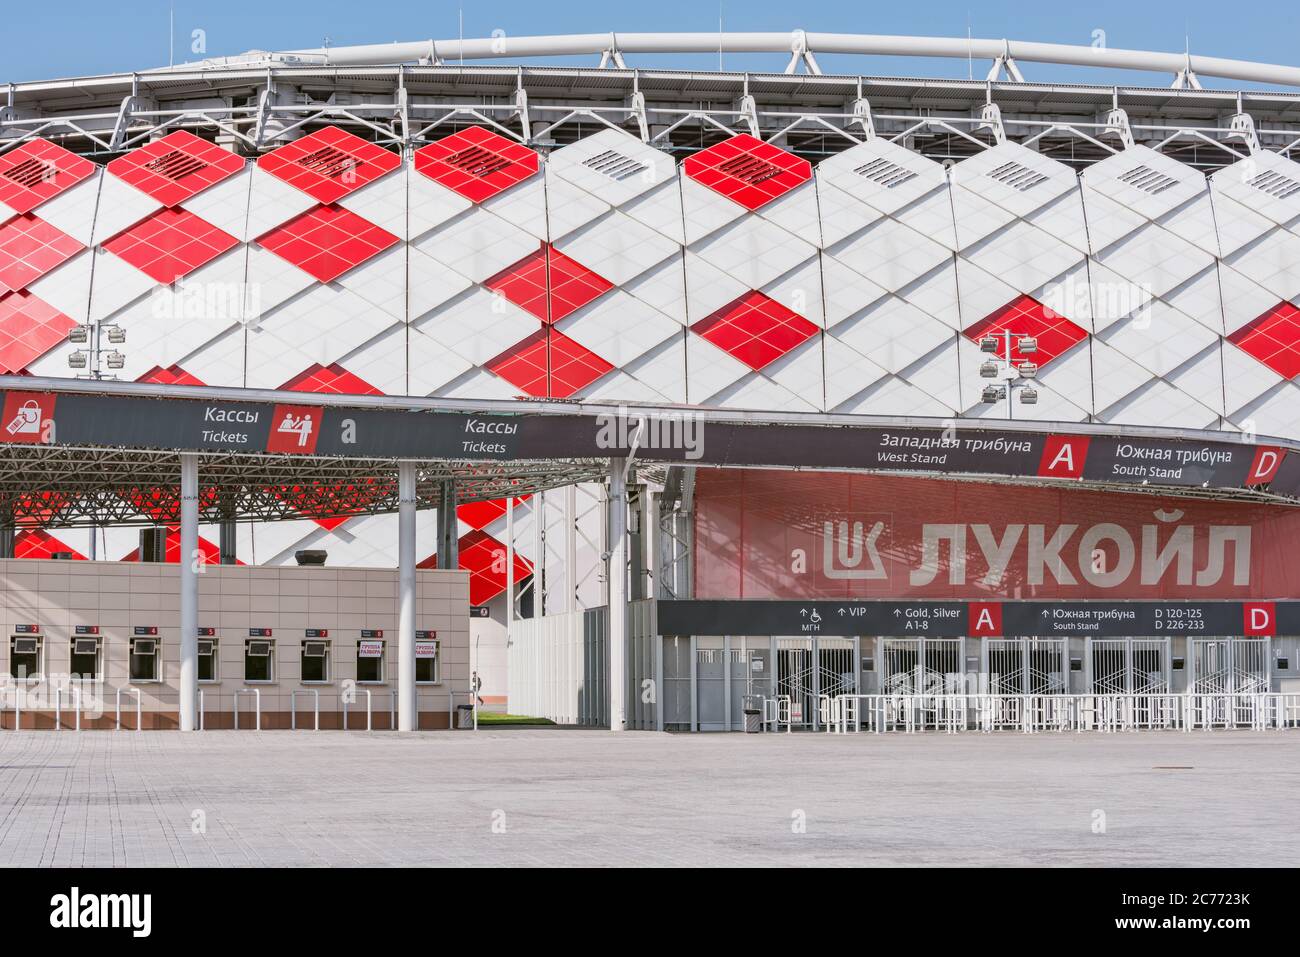 FC Spartak Moscow on X: 1 – We're underway at the Otkrytie Arena